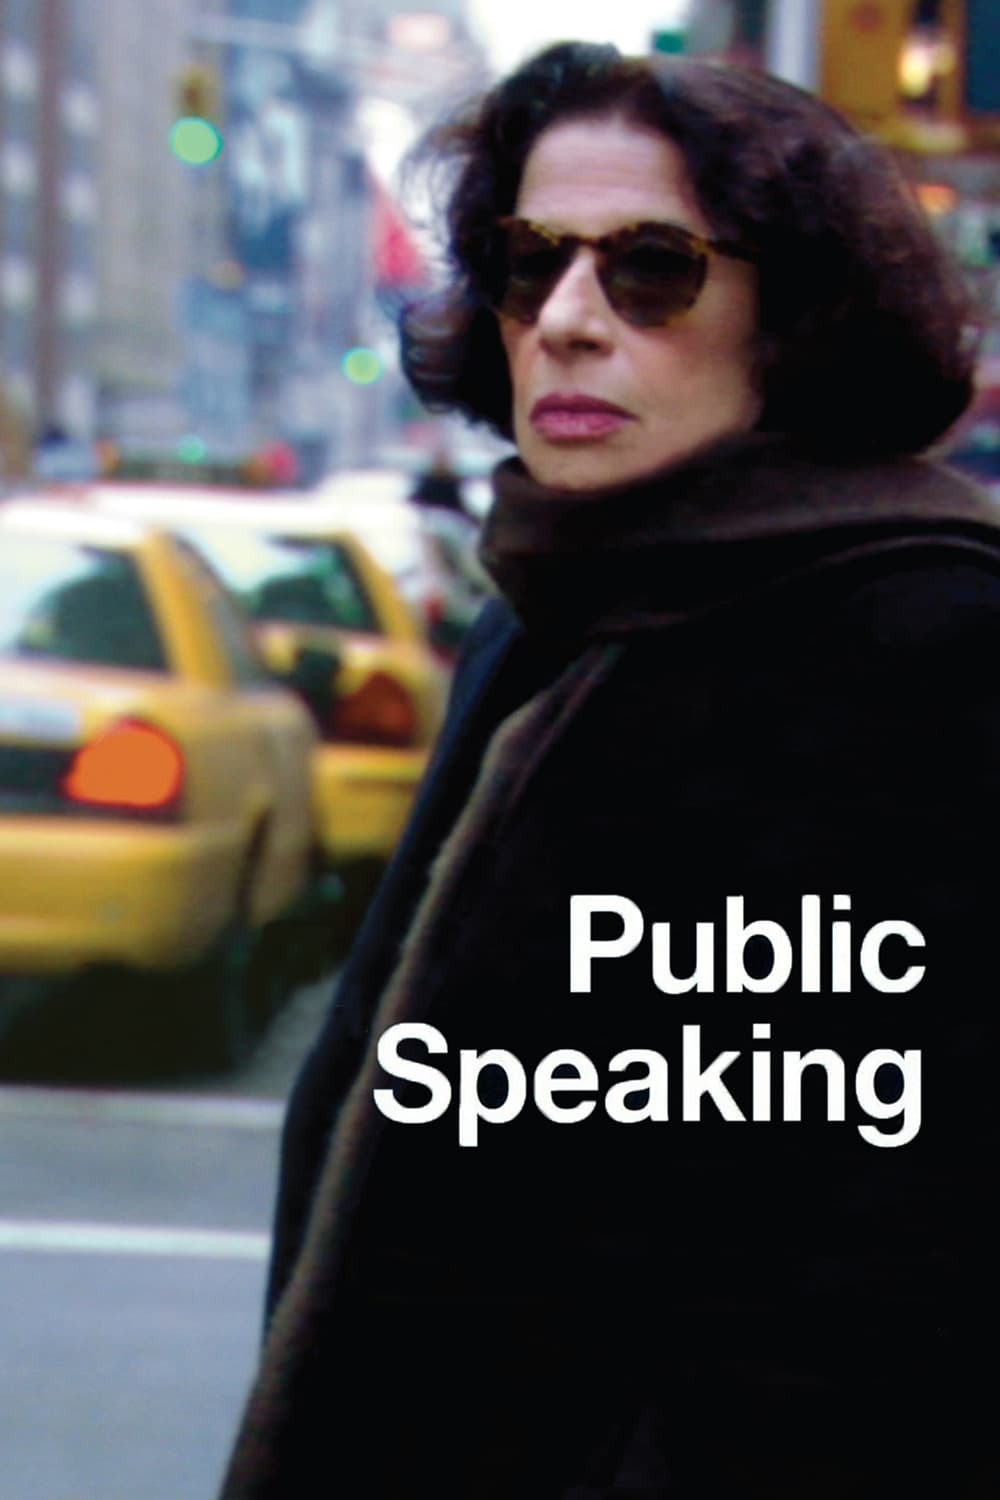 Public Speaking (2010)